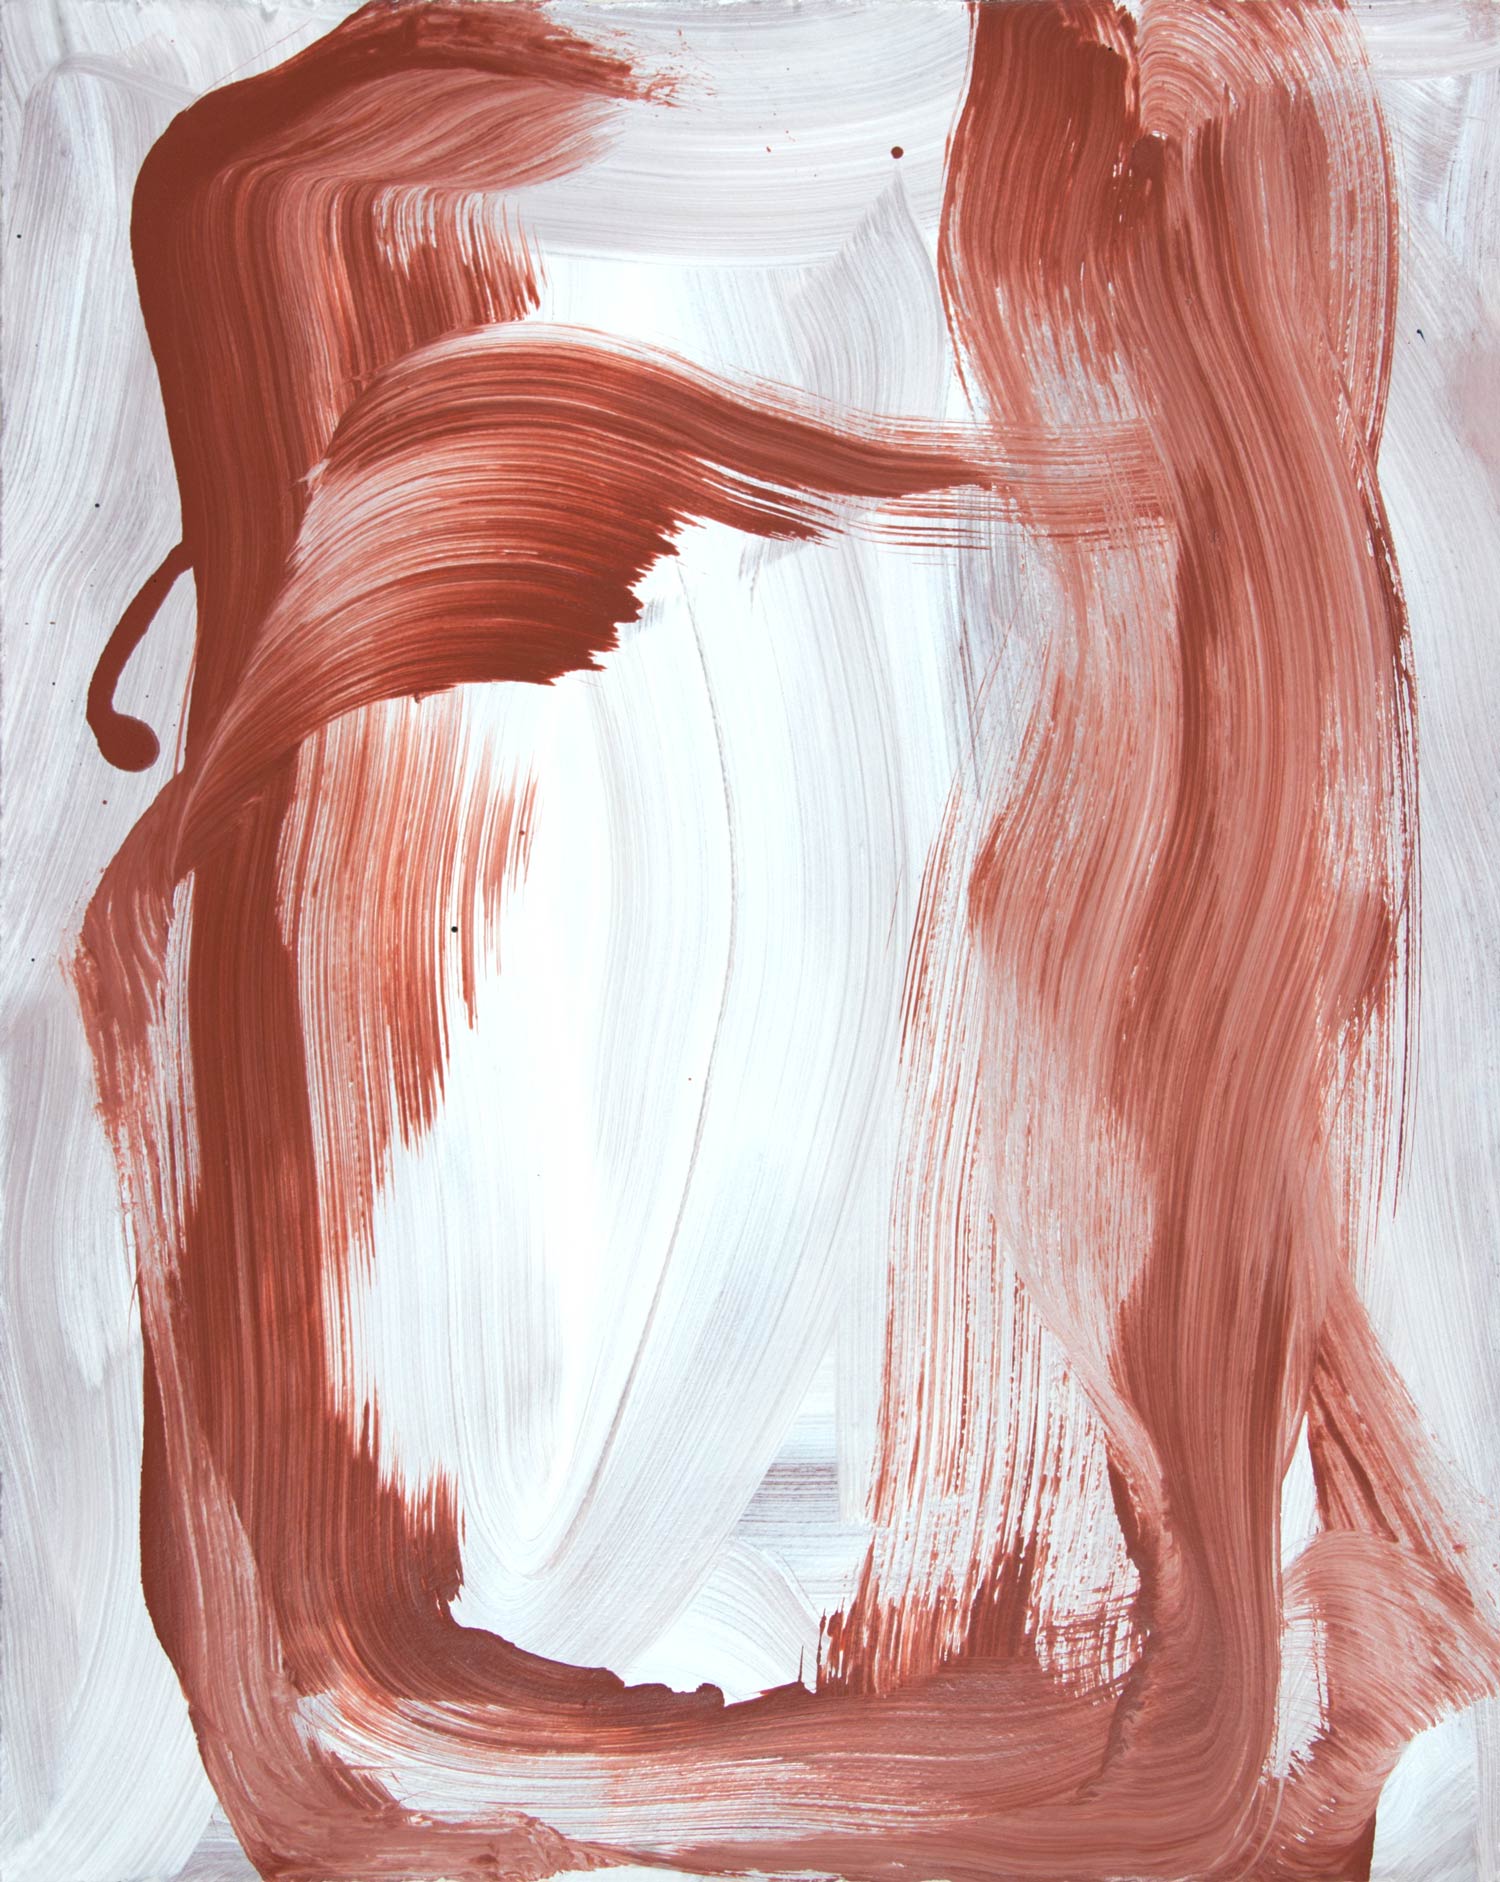   Sienna Swash , 2014 oil on gessoed paper 20 x 16 in. 